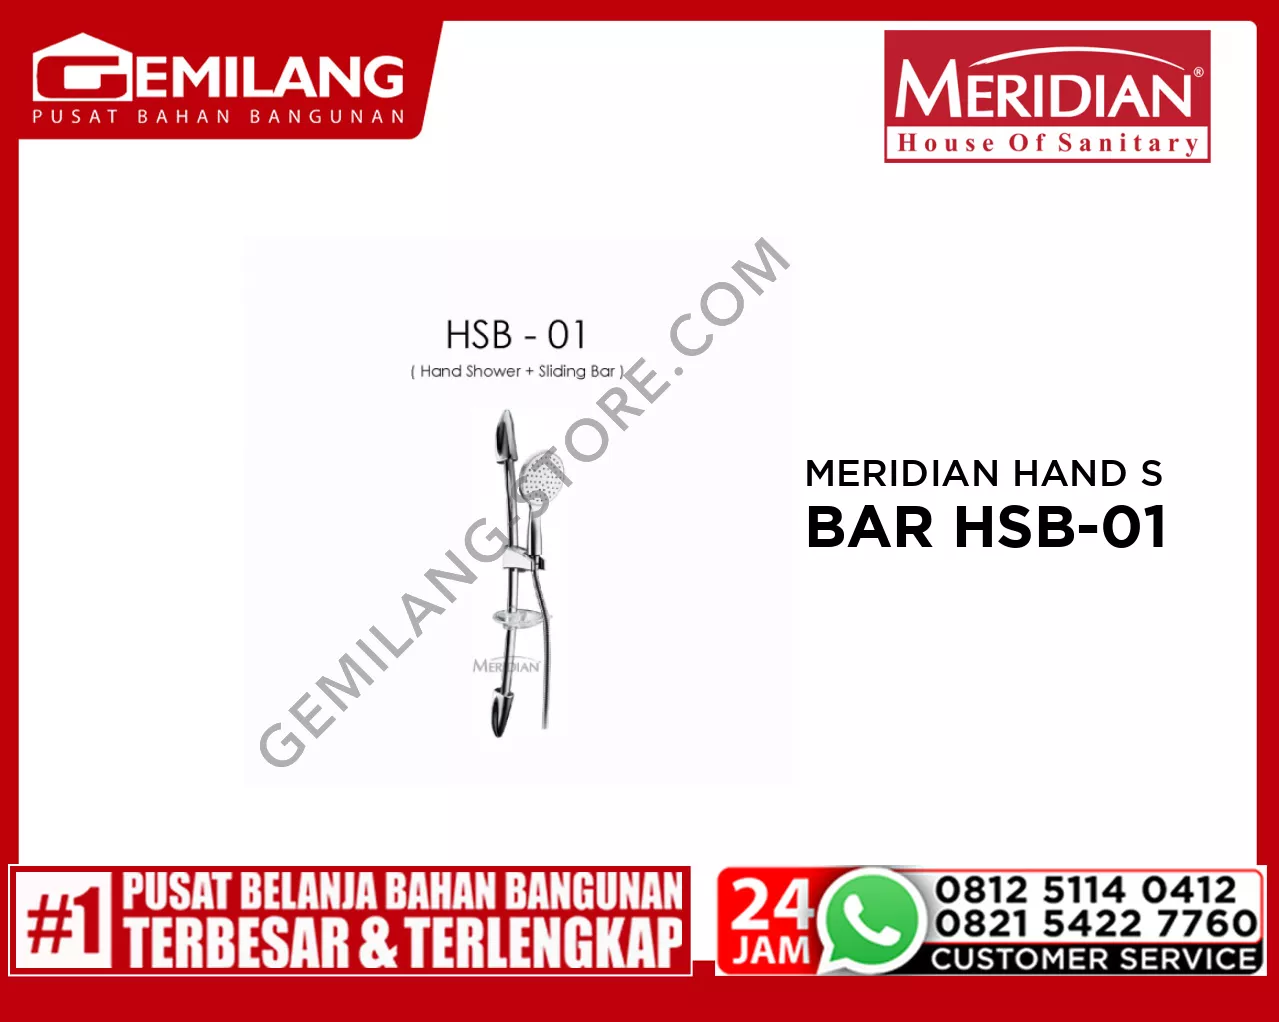 MERIDIAN HAND SHOWER + SLIDING BAR HSB-01